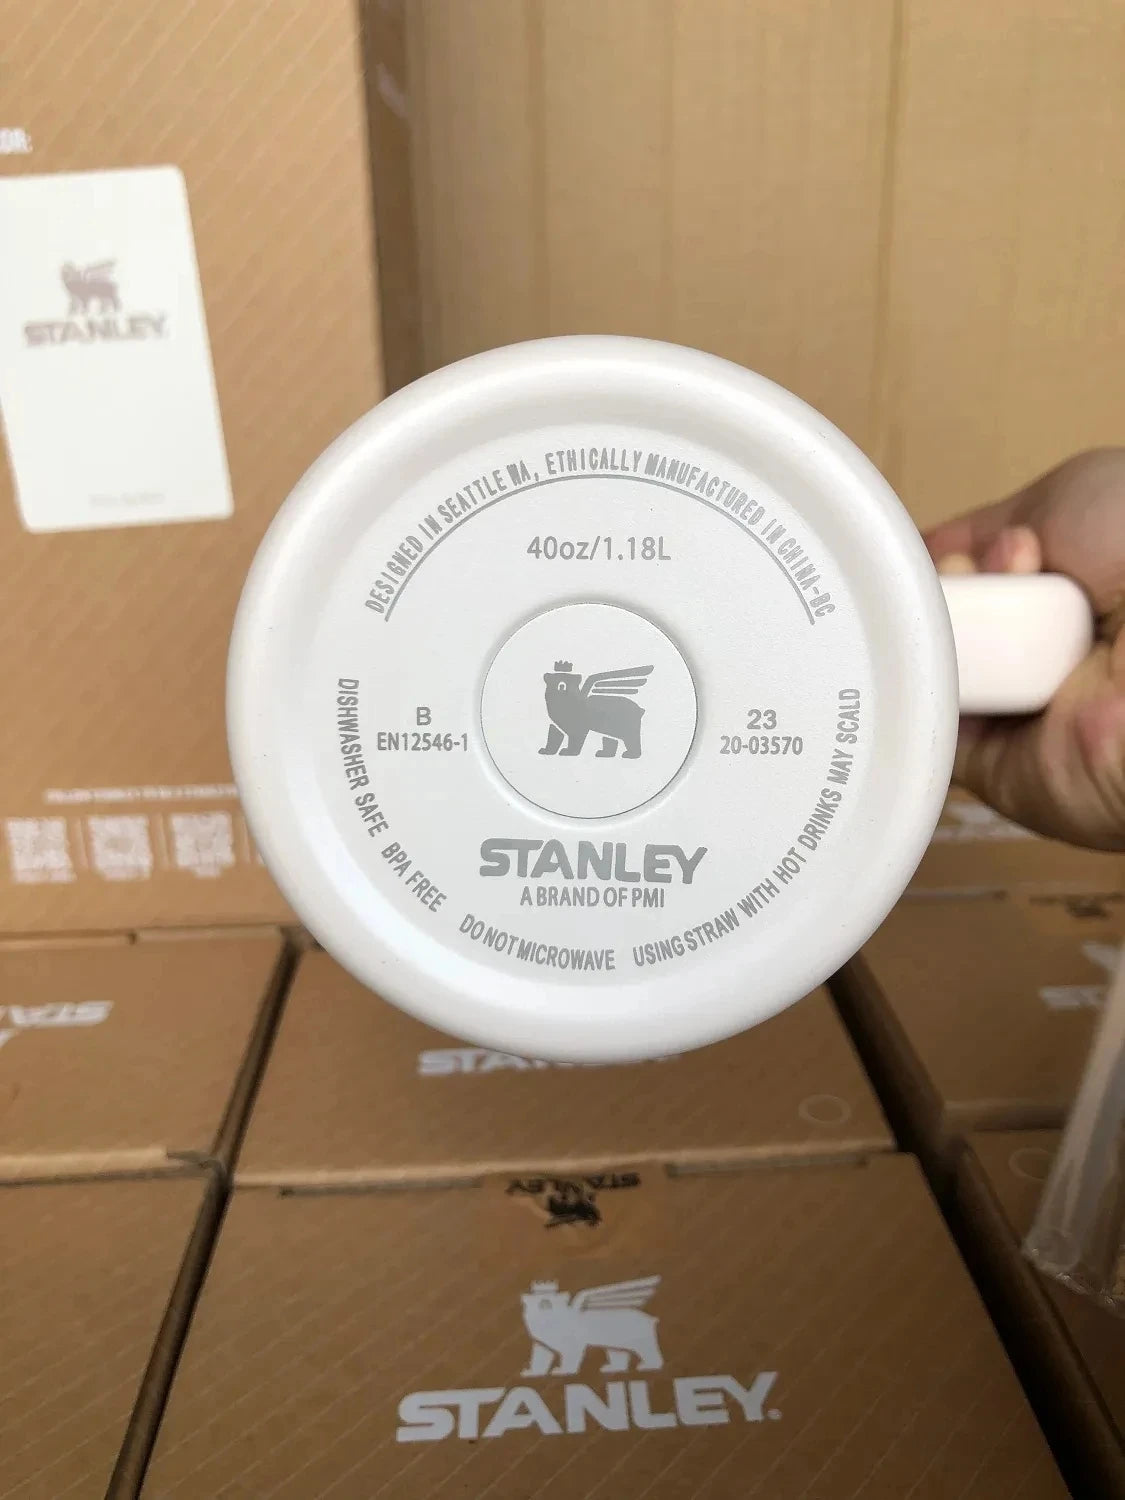 Copo Stanley Tumbler Quencher H2.0: Mantenha suas Bebidas na Temperatura Perfeita a Todo Momento!